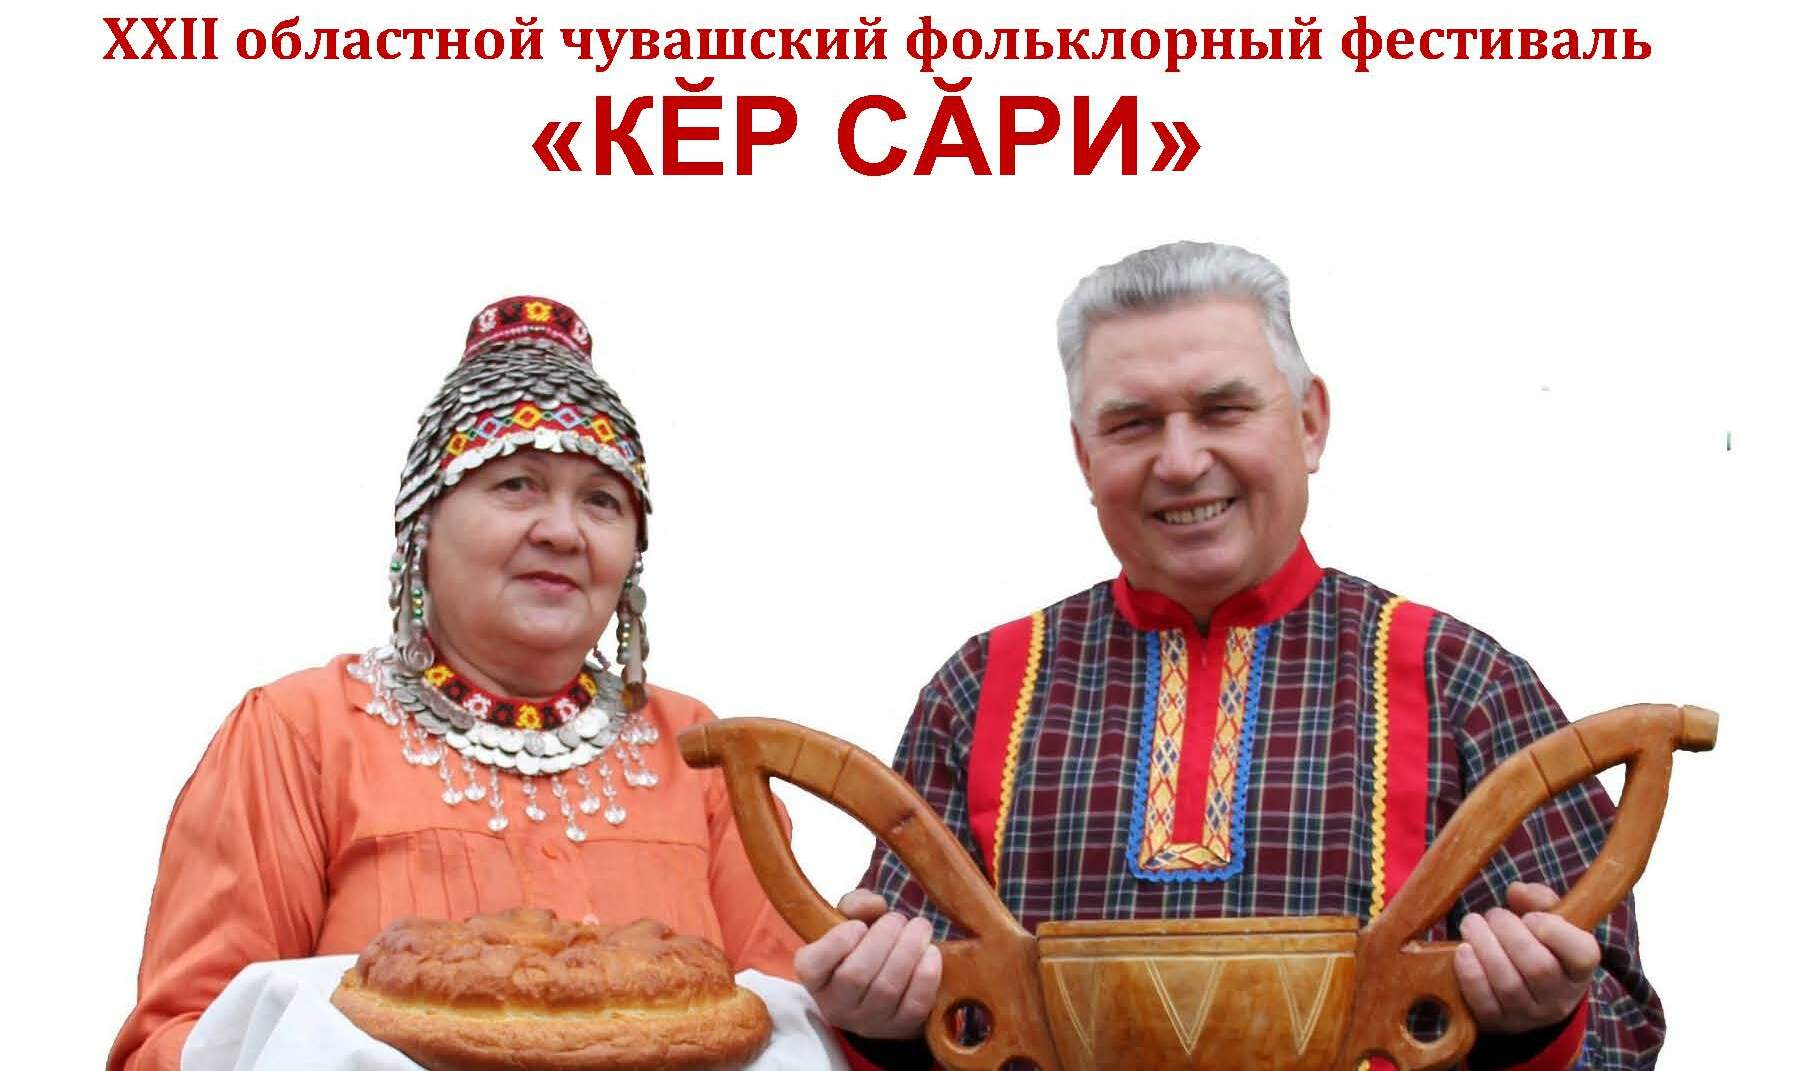 Ежегодный чувашский праздник «Кĕр сăри» собирает гостей!